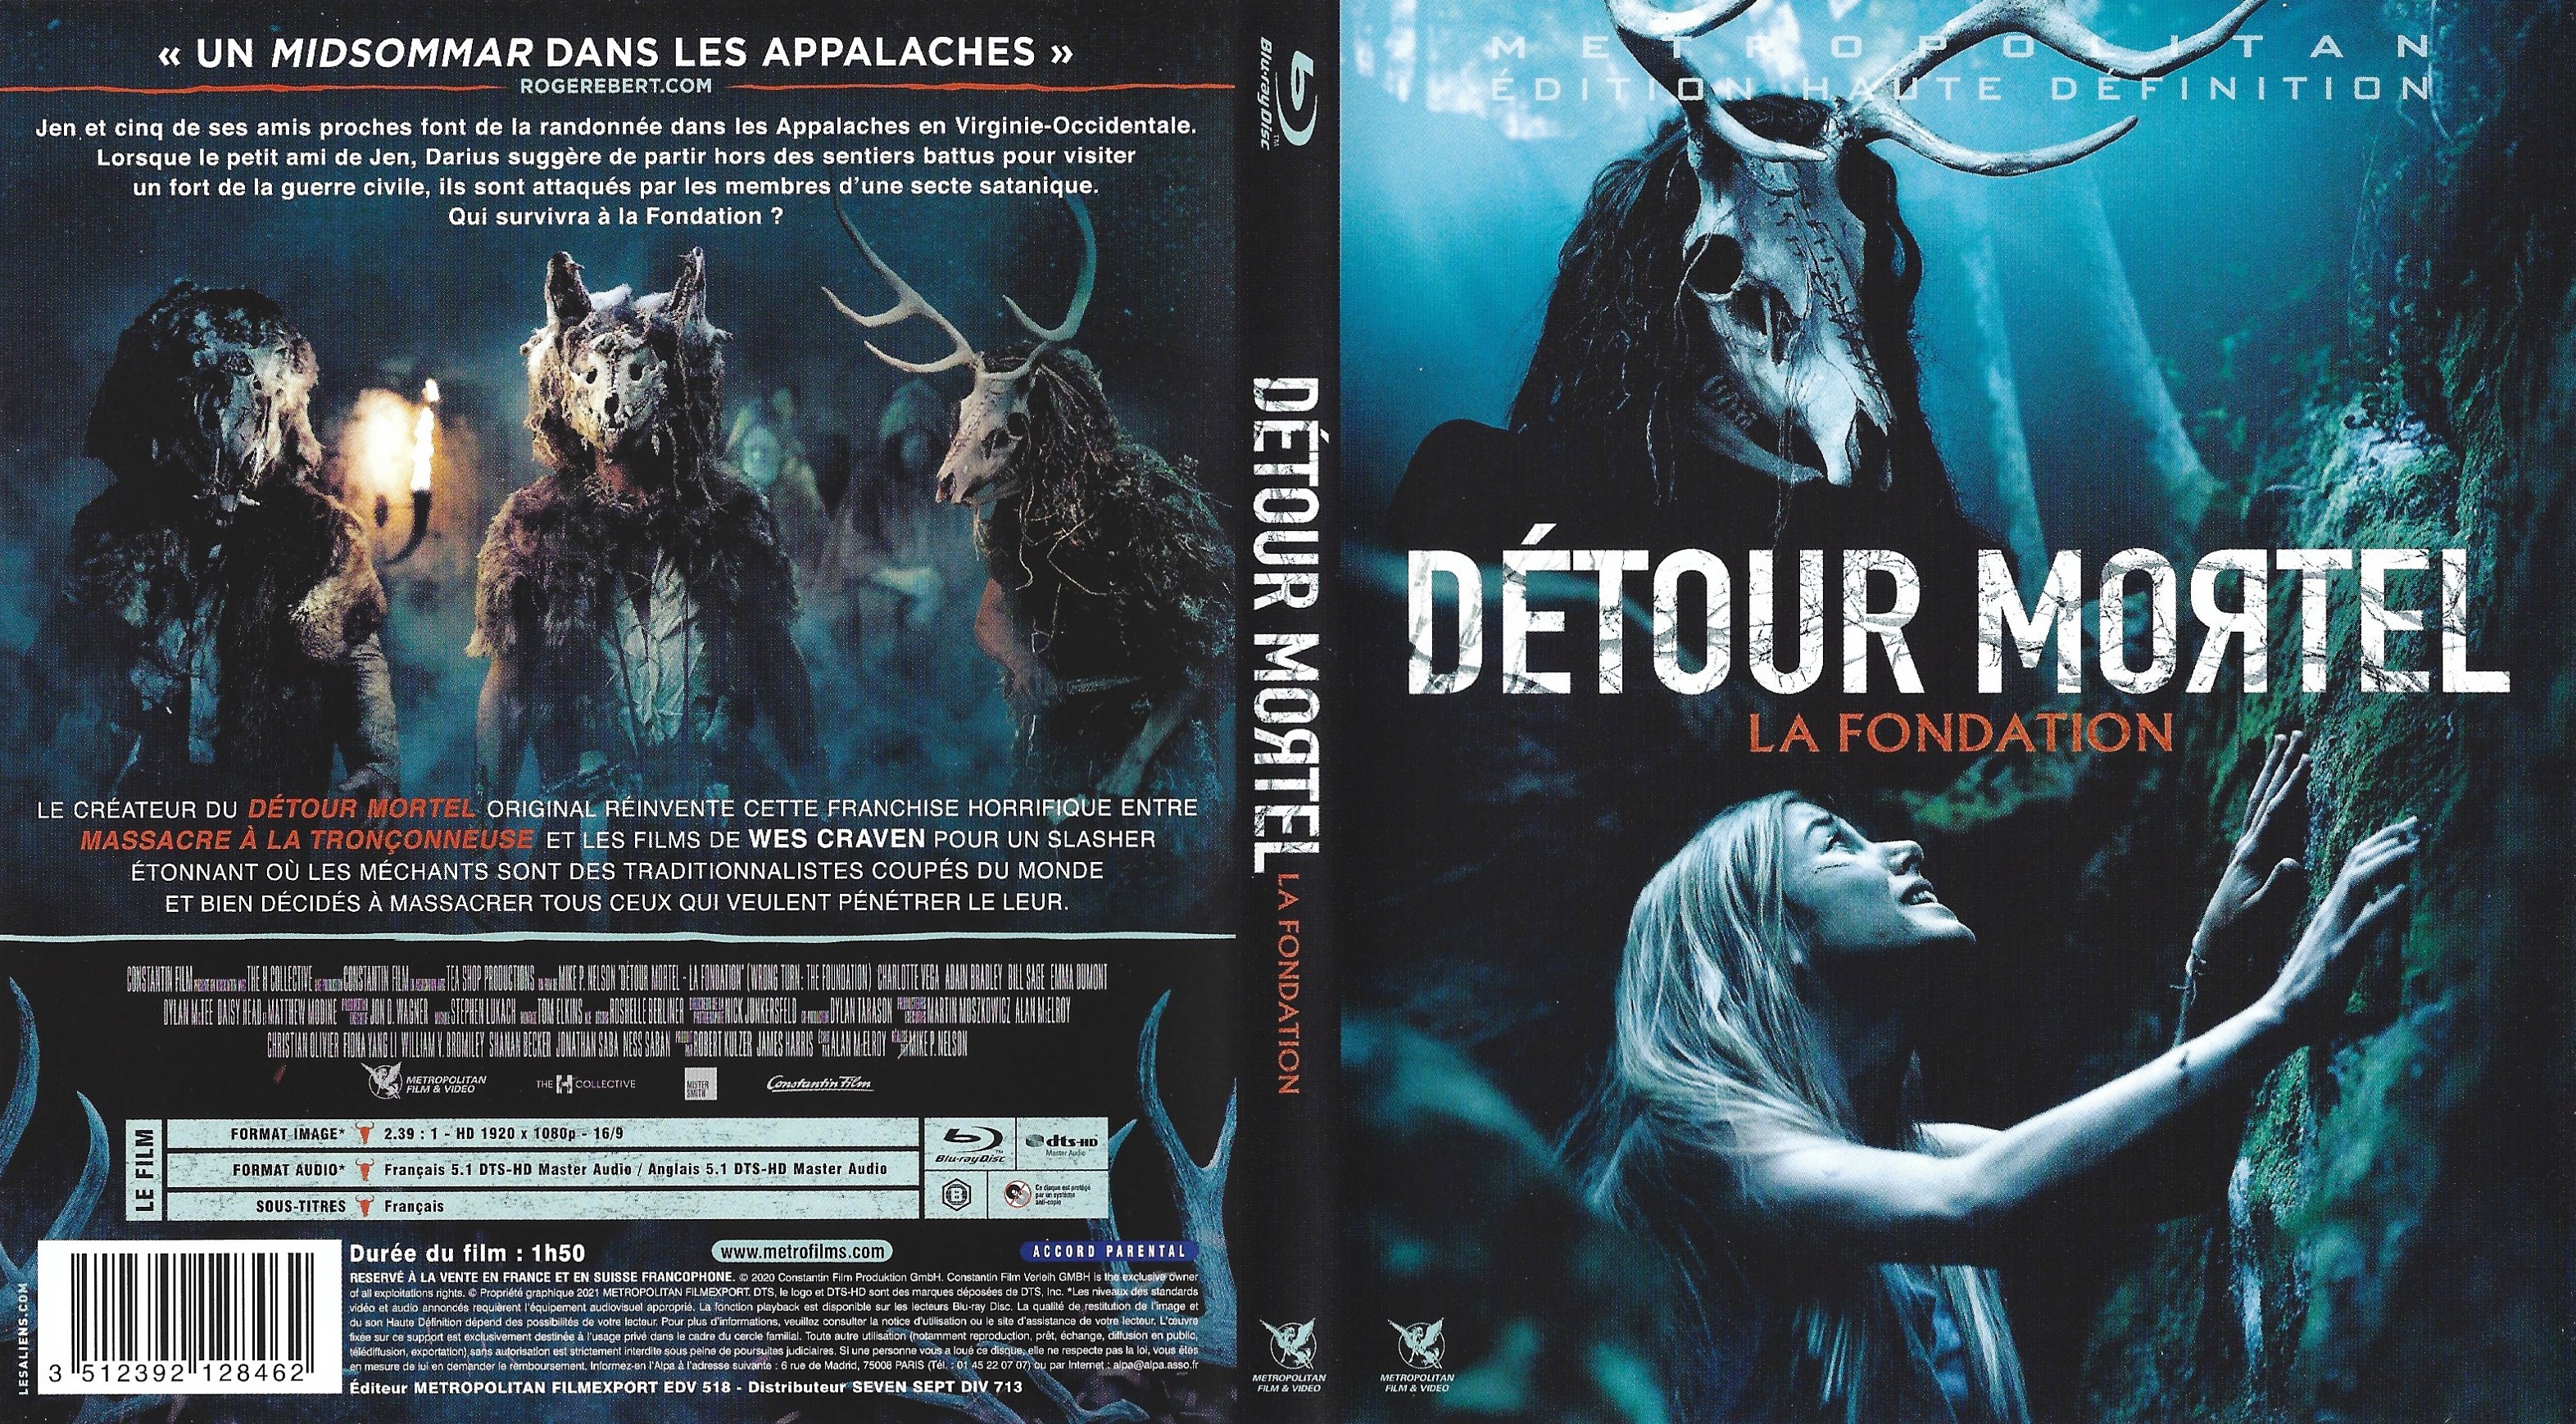 Jaquette DVD Detour Mortel - La Fondation (BLU-RAY)